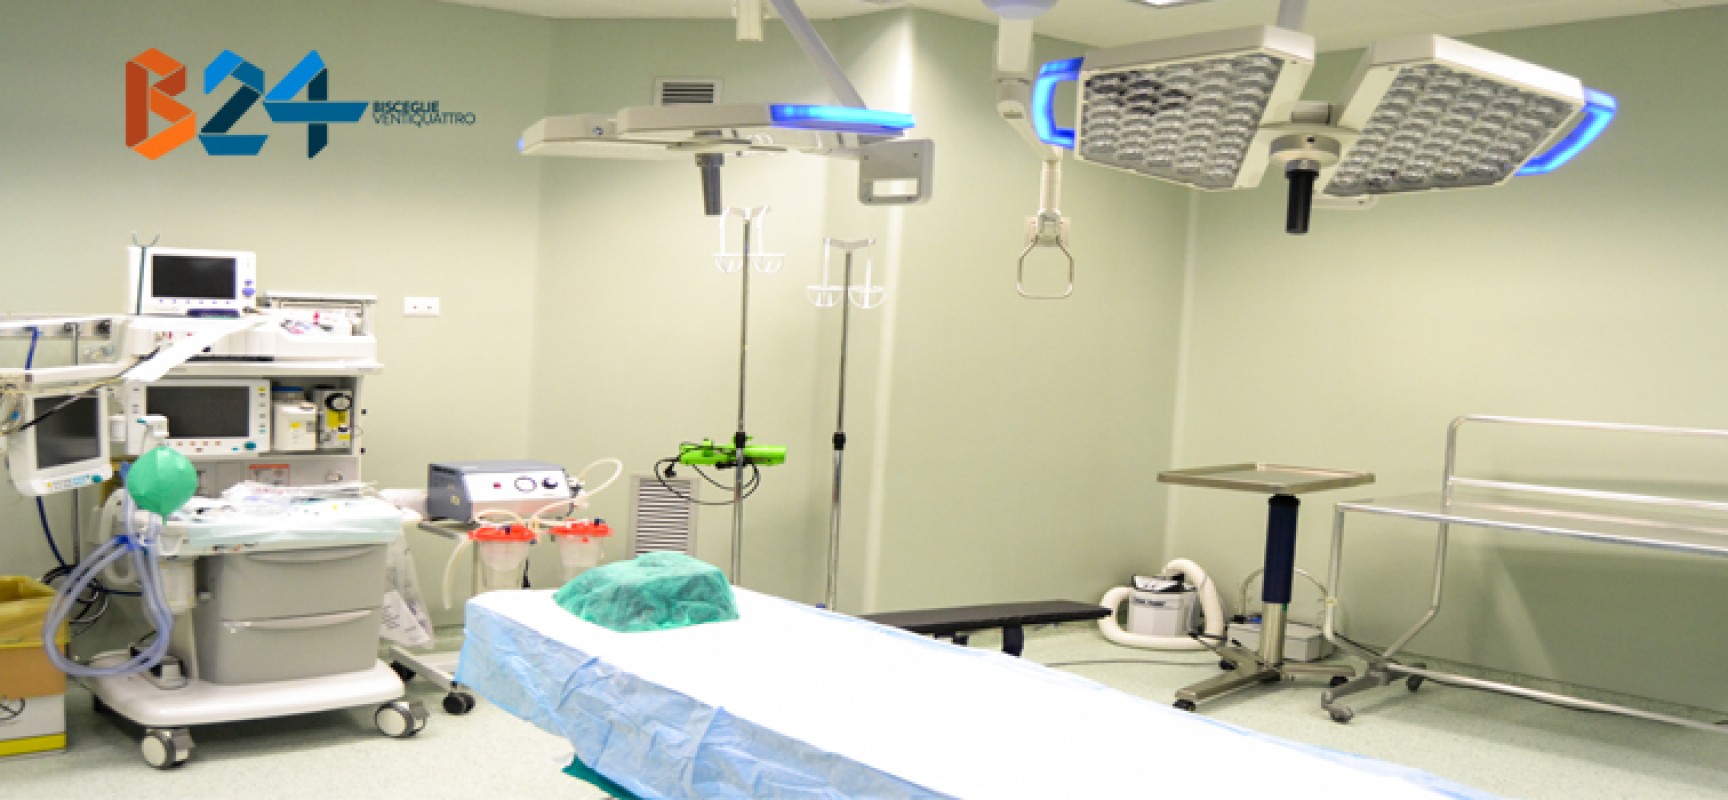 Ospedale di Bisceglie, intervento di ablazione con radiofrequenza: prima volta nell’Asl Bat